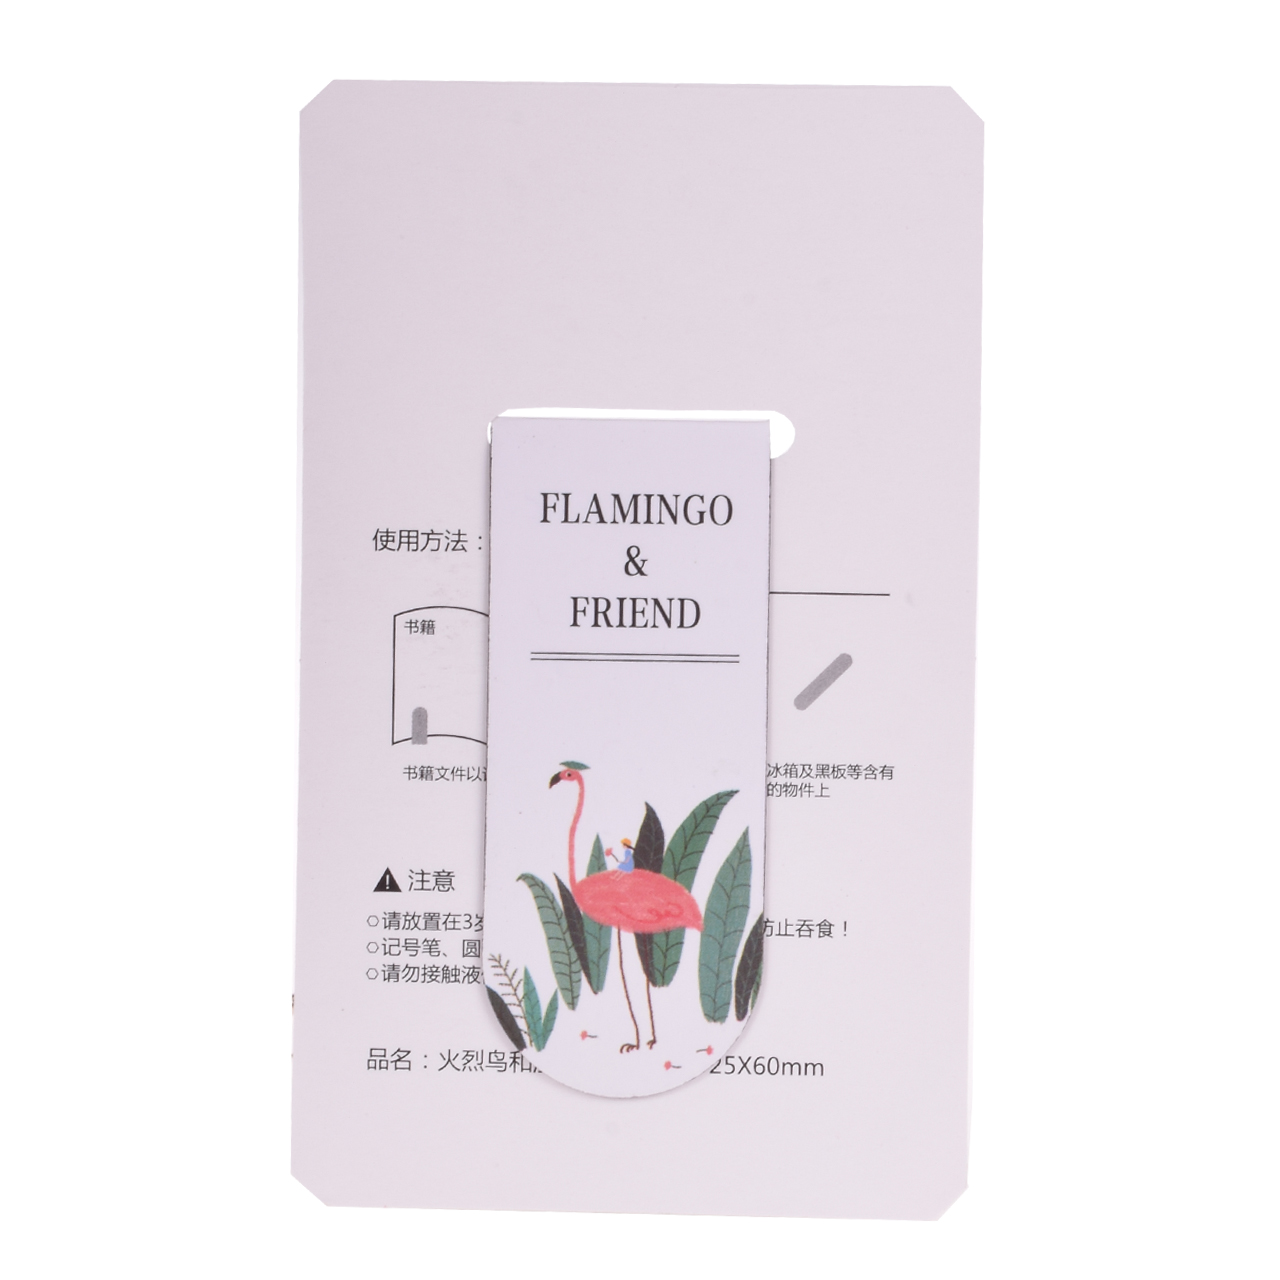 نشانگر کتاب مگنتی مدل Flamingo and friend 3